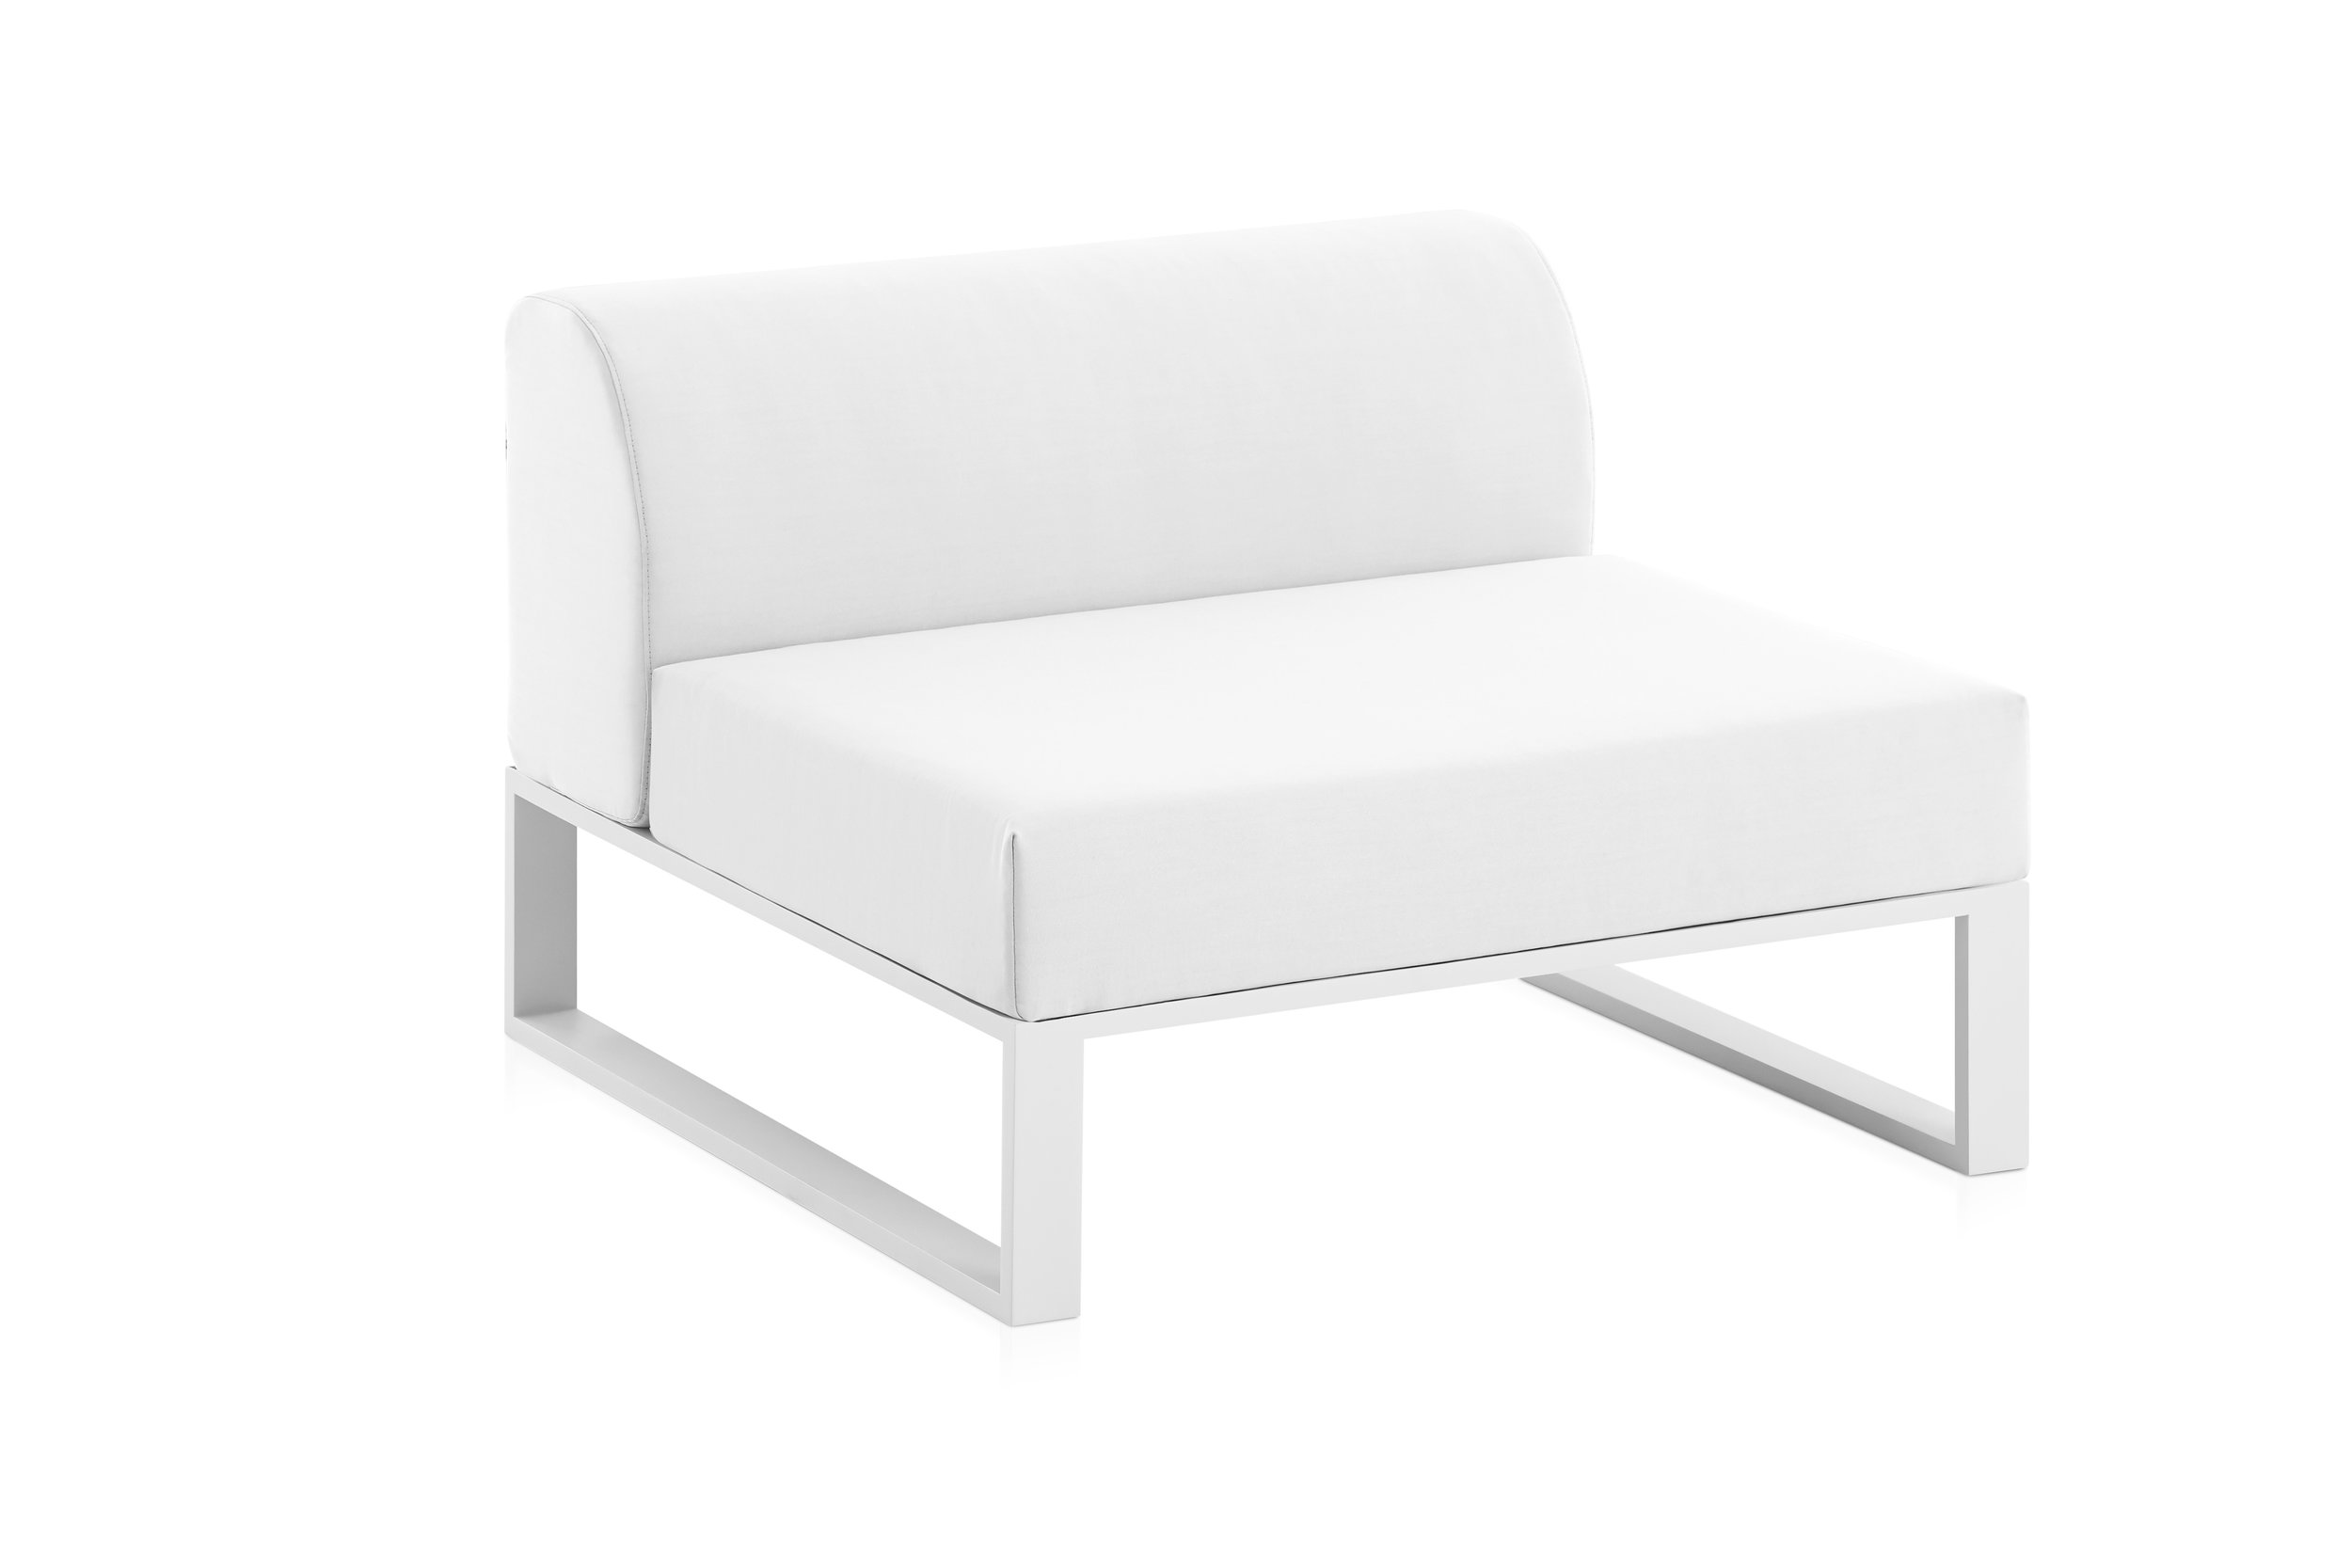 Ploid single sofa white.jpg